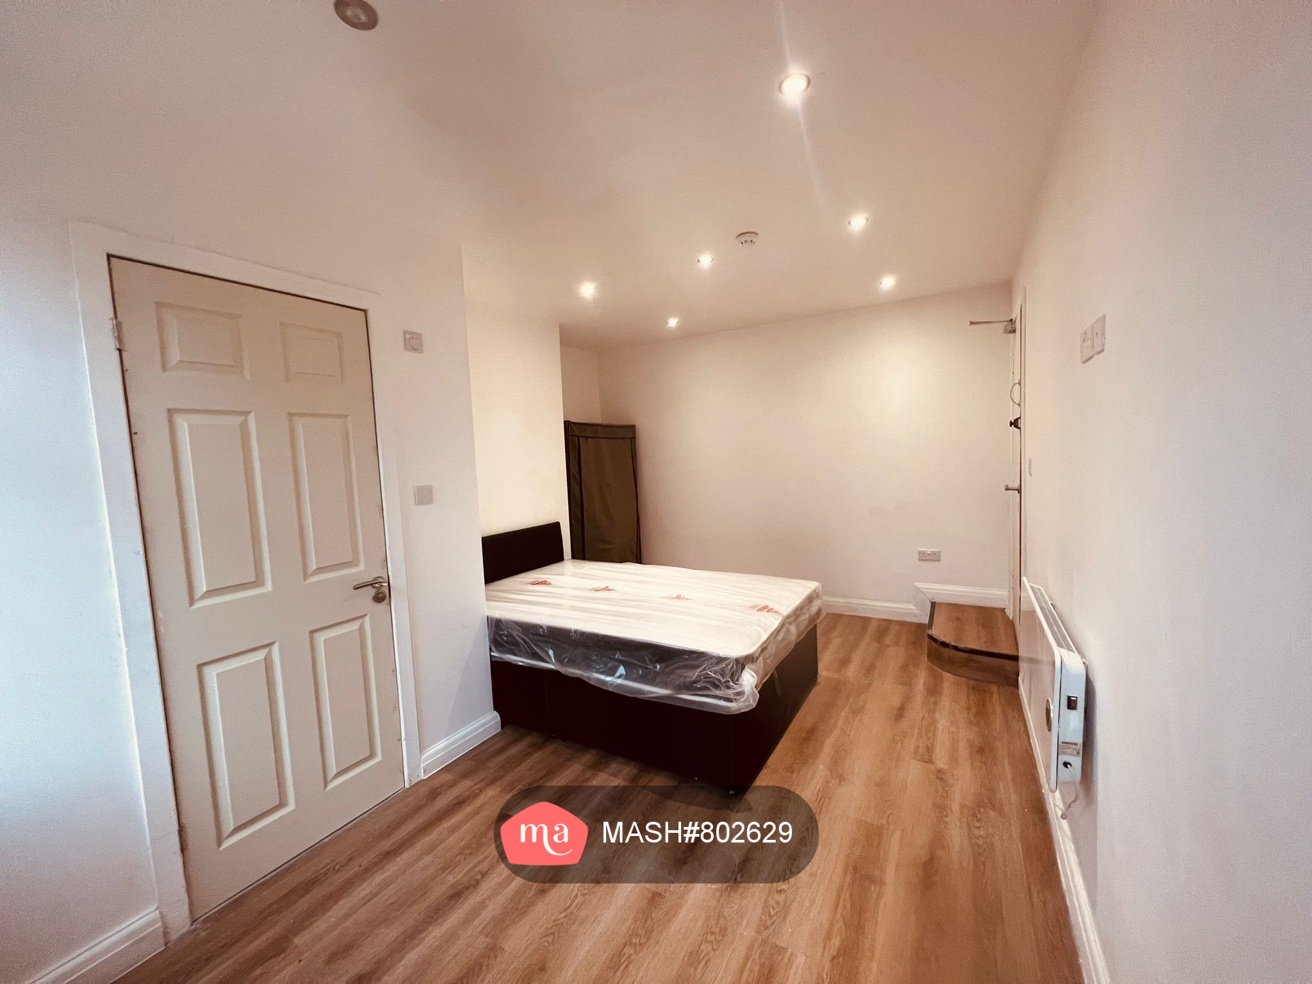 1 Bedroom Flat to rent in Leeds - Mashroom